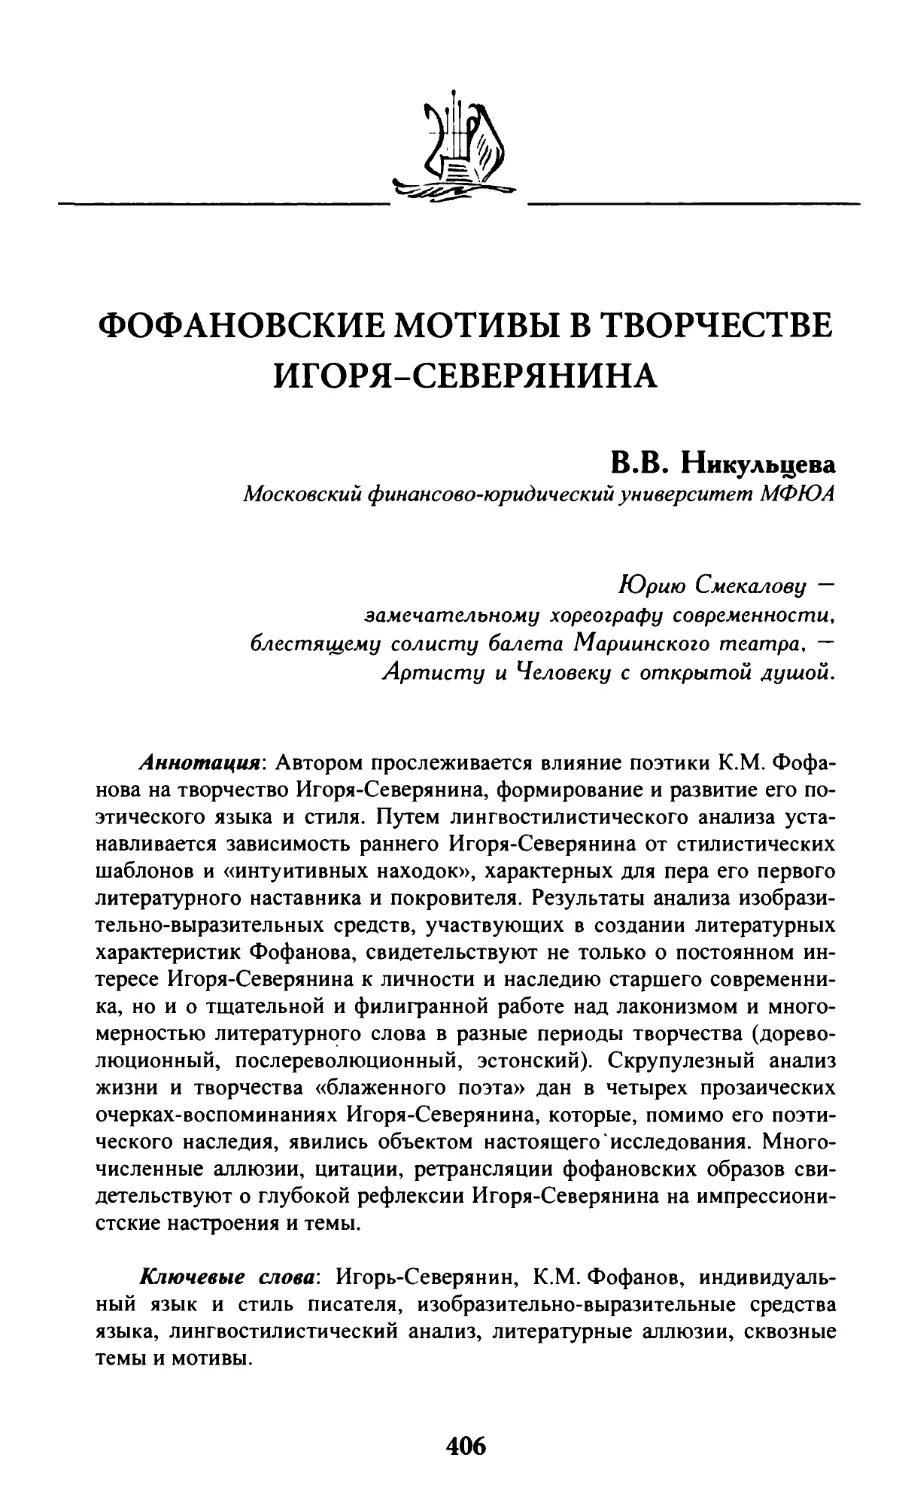 Никульцева В.В. Фофановские мотивы в творчестве Игоря-Северянина